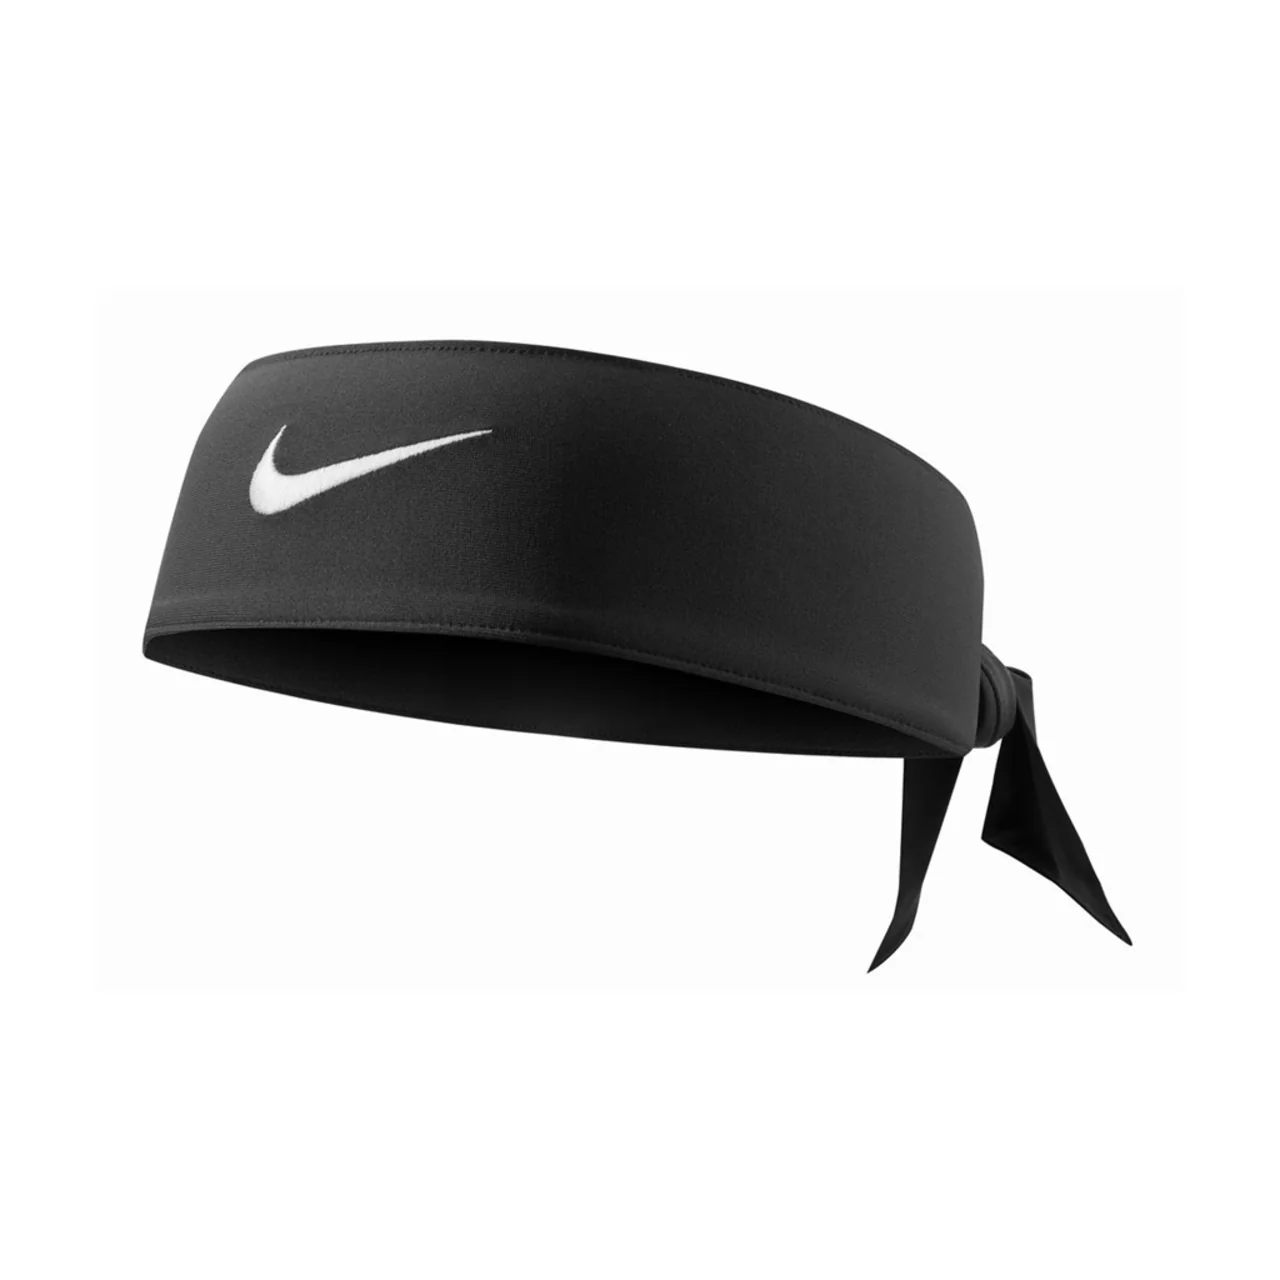 Nike Dri-Fit Head Tie Black